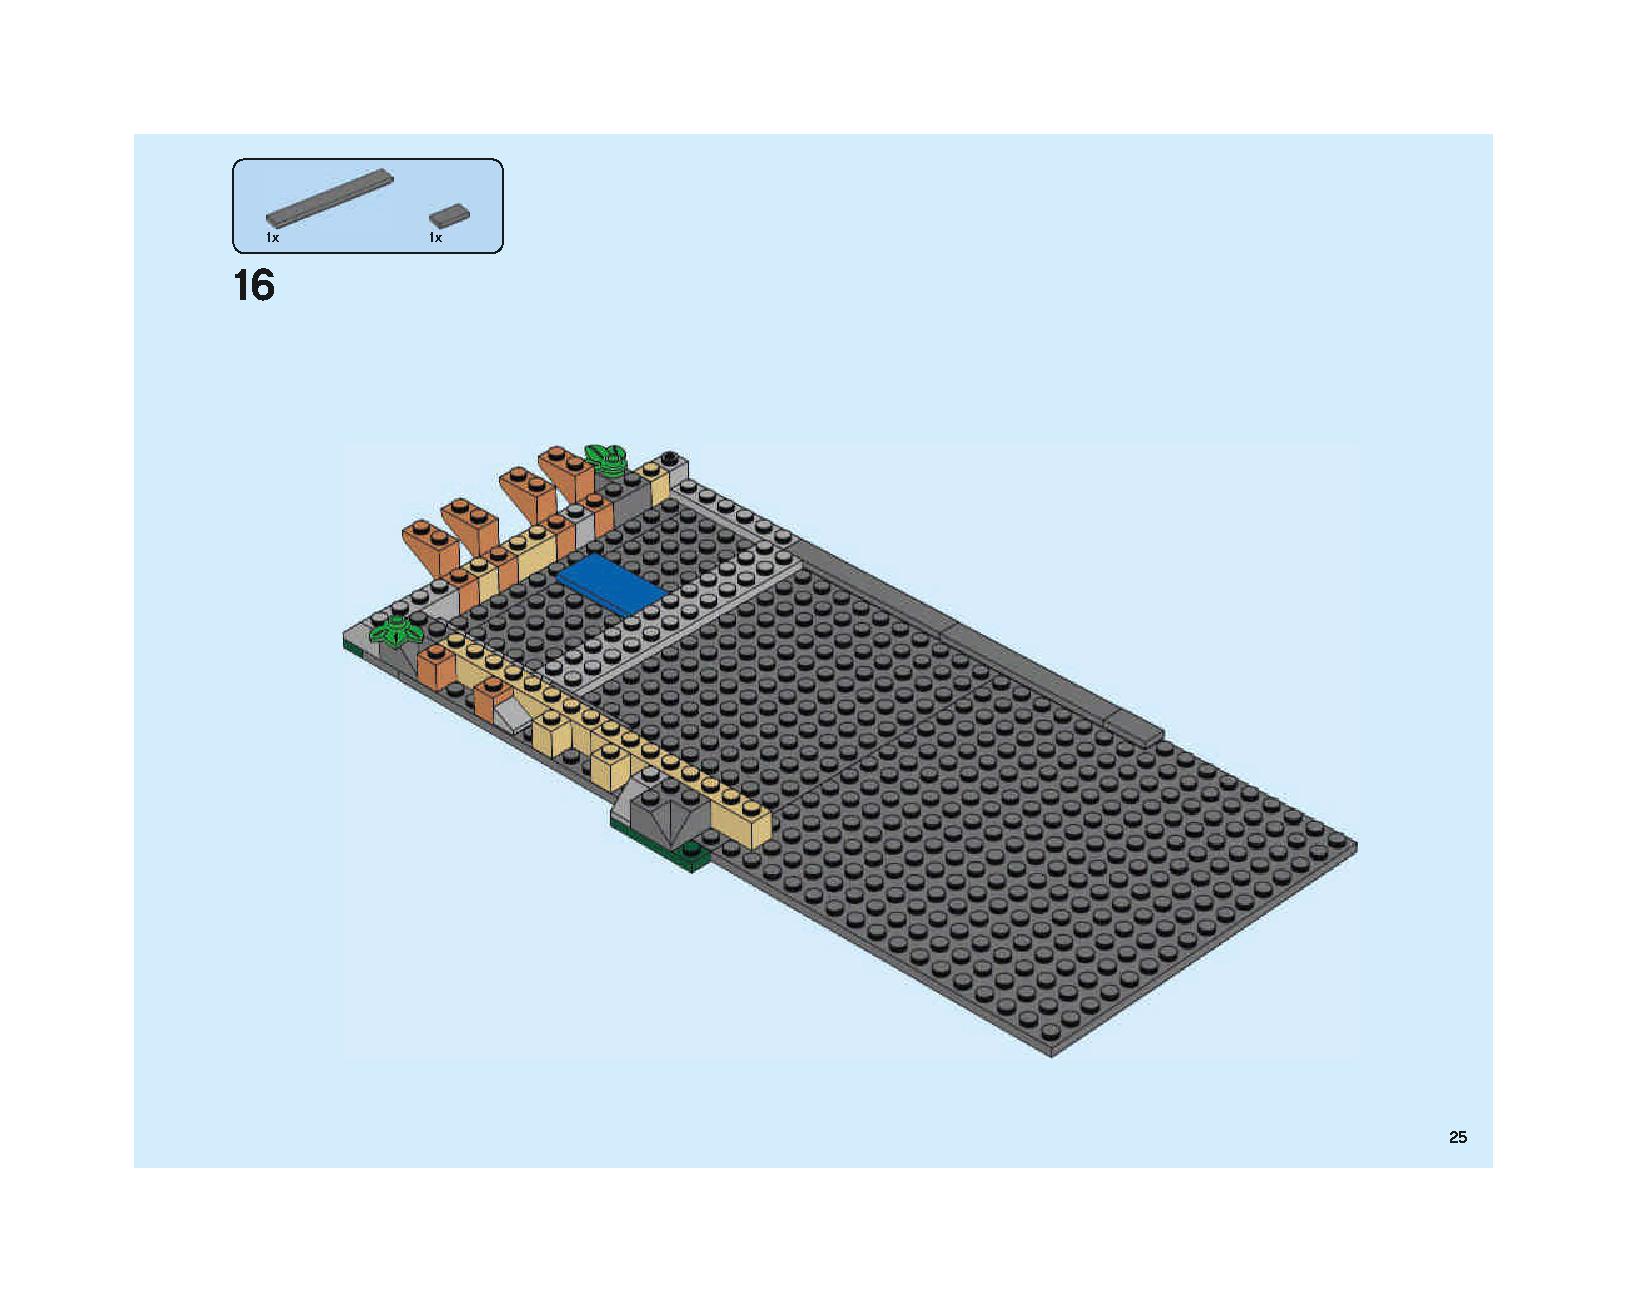 ホグワーツの大広間 75954 レゴの商品情報 レゴの説明書・組立方法 25 page